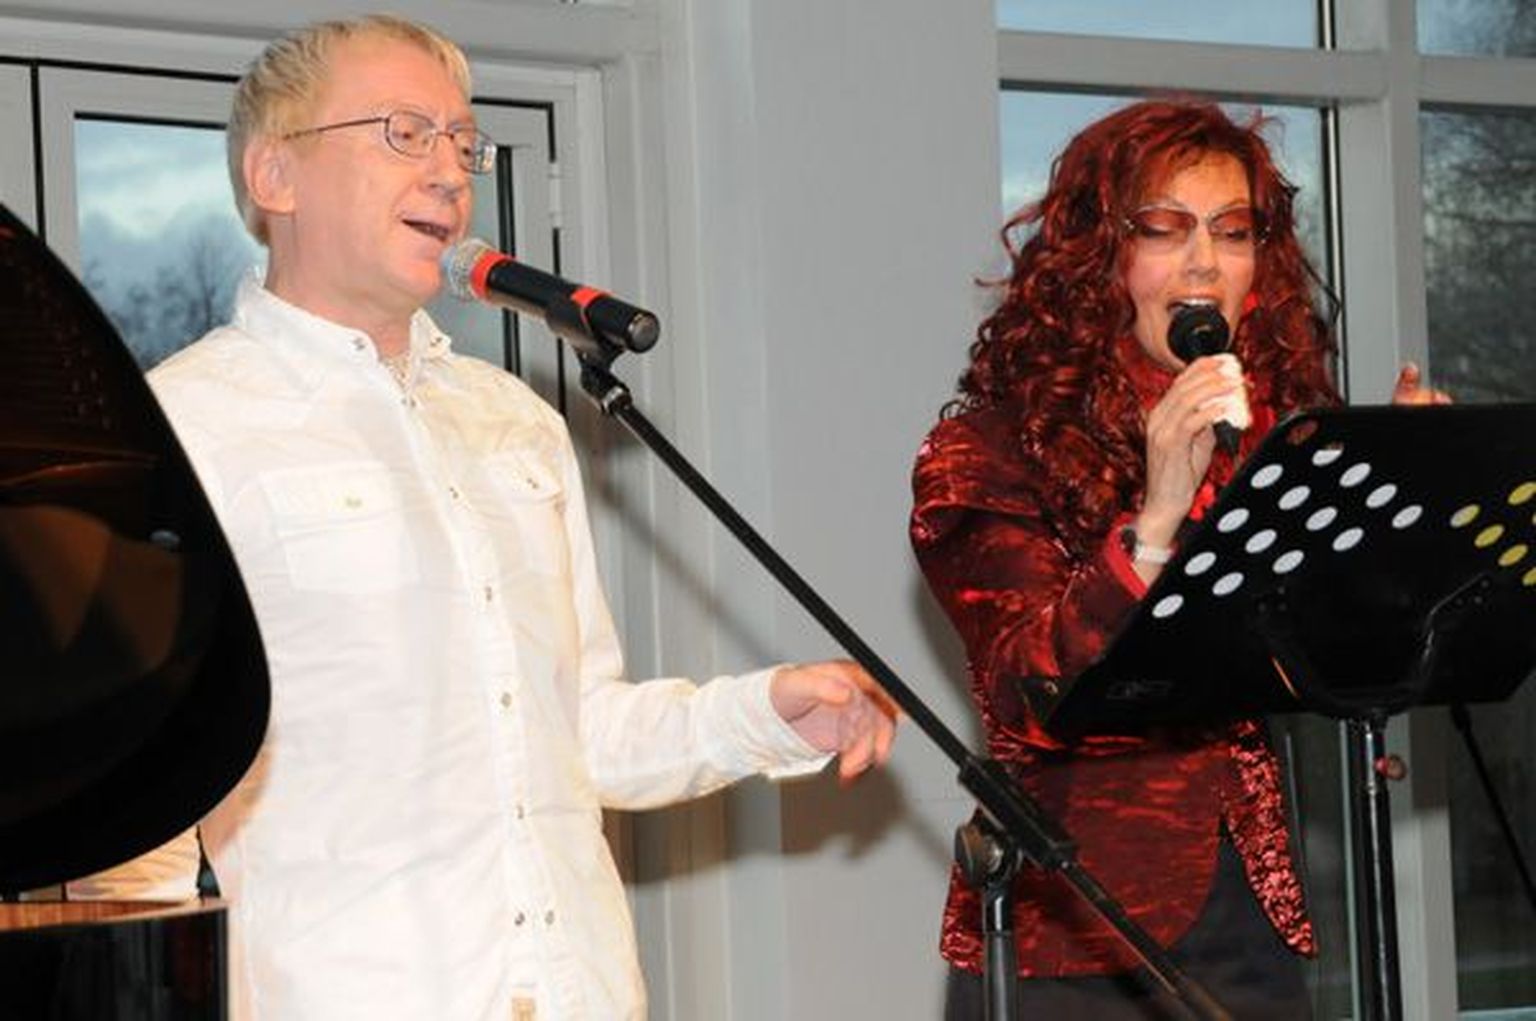 Tallinna Lauluväljaku Kultuurikeskuse avamine, 04.11.2008 - etteaste tegid ka laulutähed Linnar Priimägi ja Marju Kuut